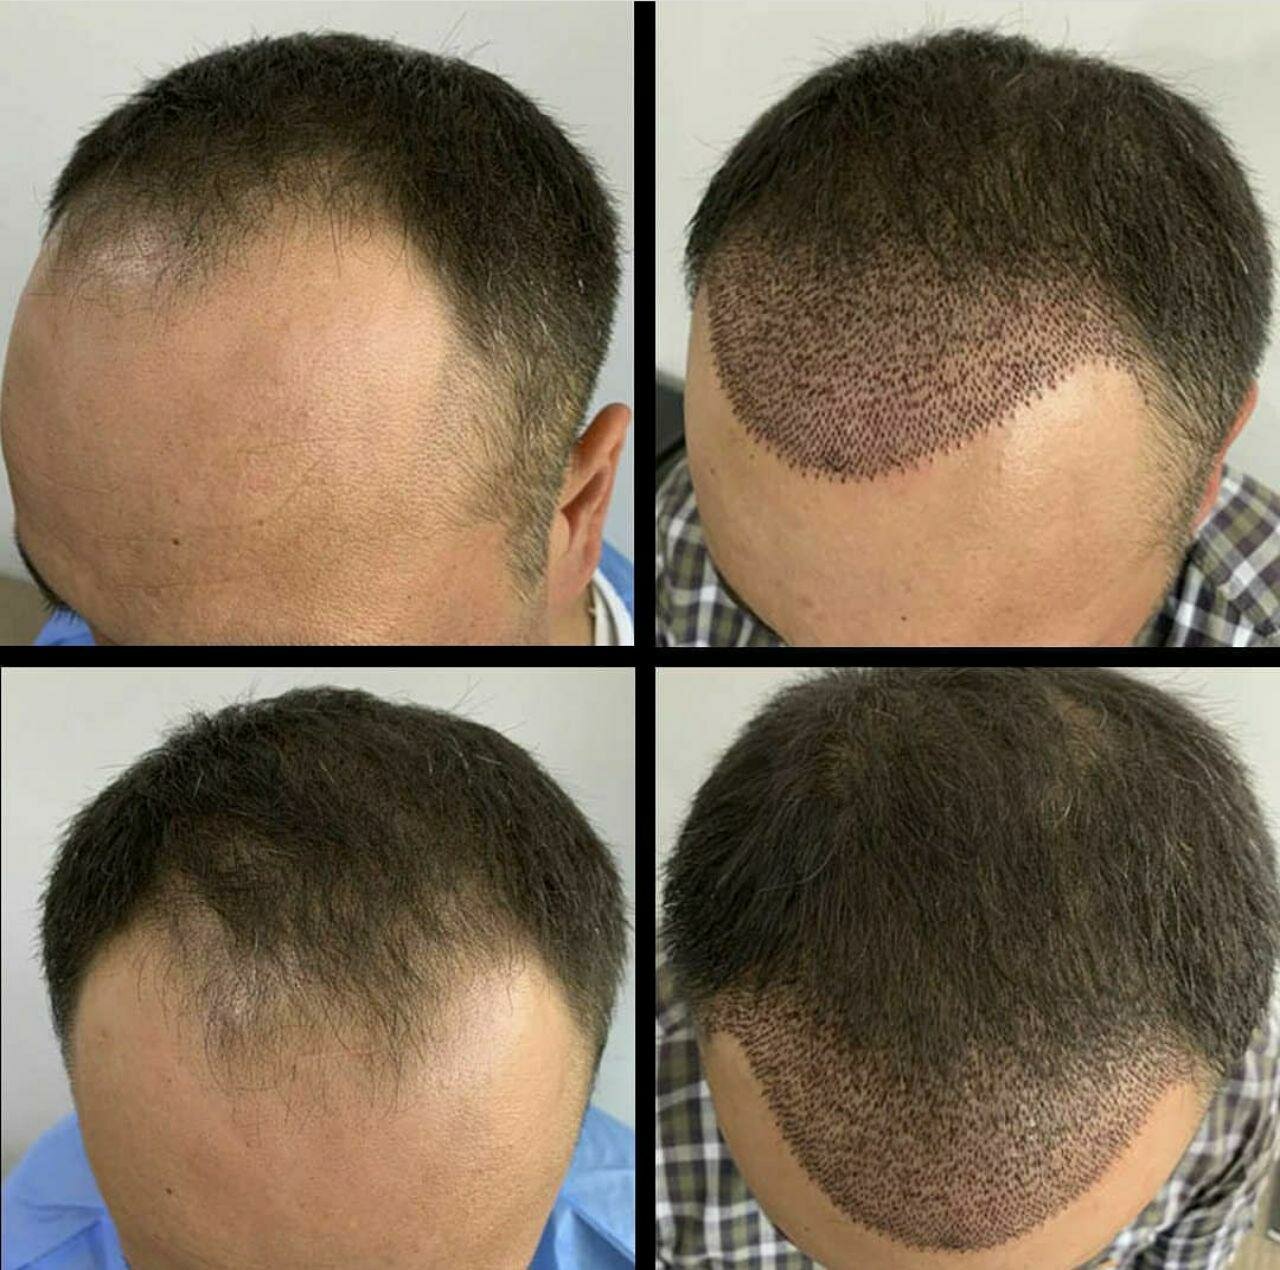 Пересадка (трансплантация) волос на голове. операция по пересадке волос: противопоказания, реабилитация, послеоперационный период